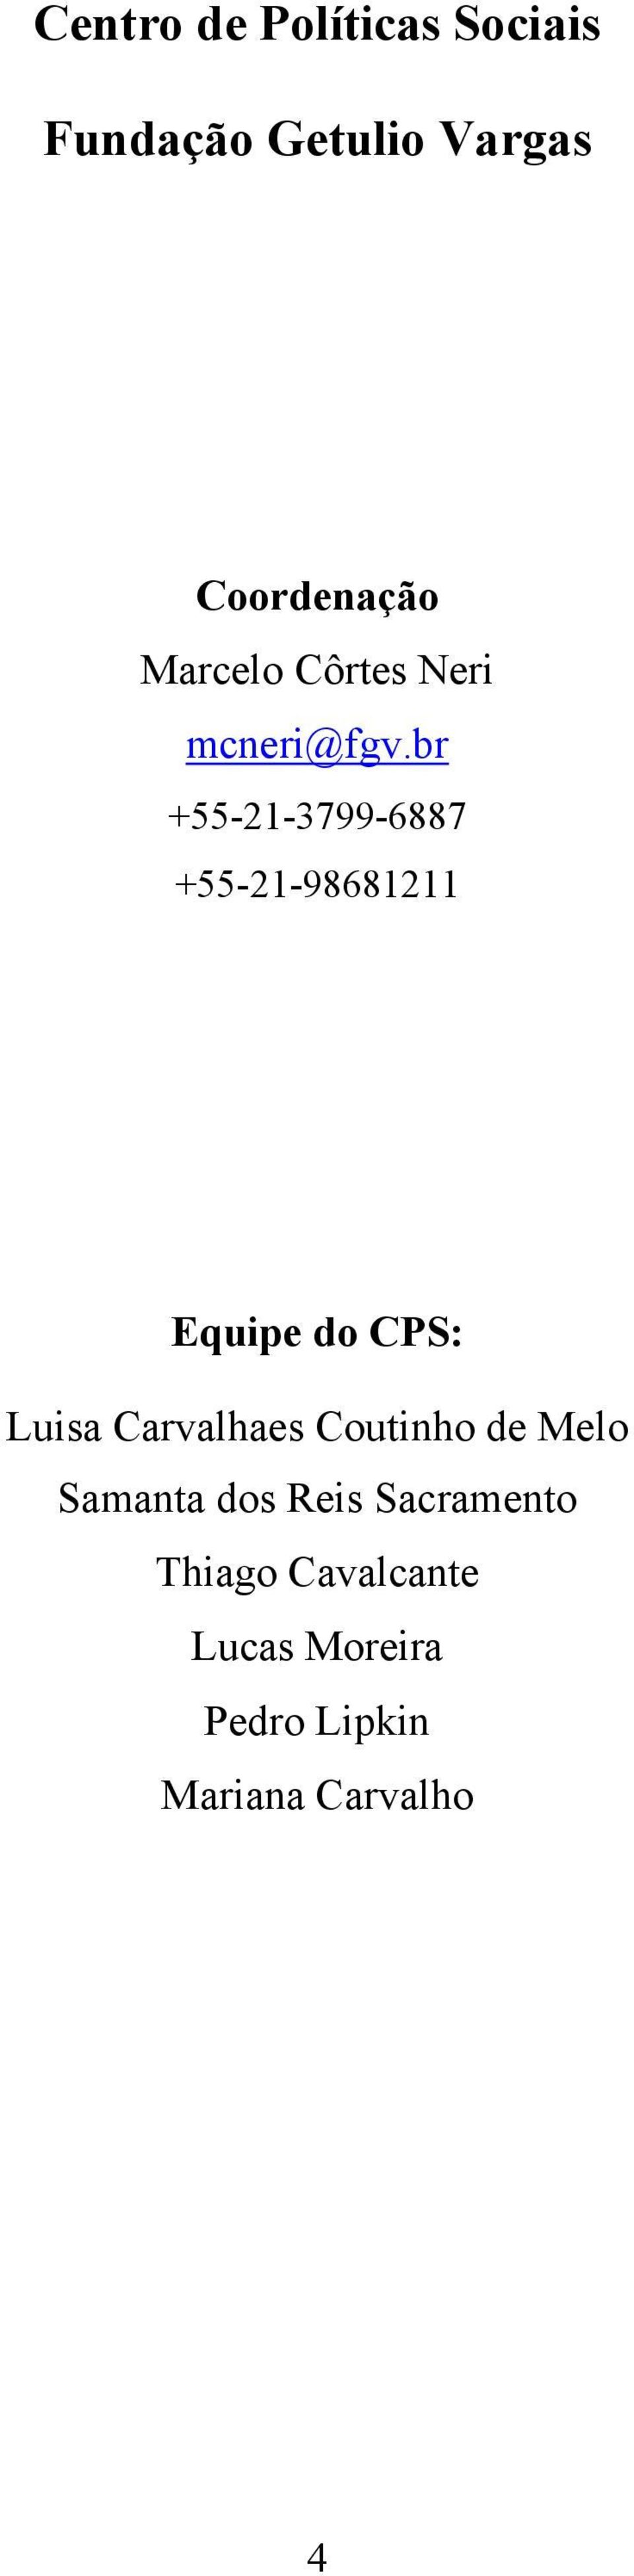 br +55-21-3799-6887 +55-21-98681211 Equipe do CPS: Luisa Carvalhaes